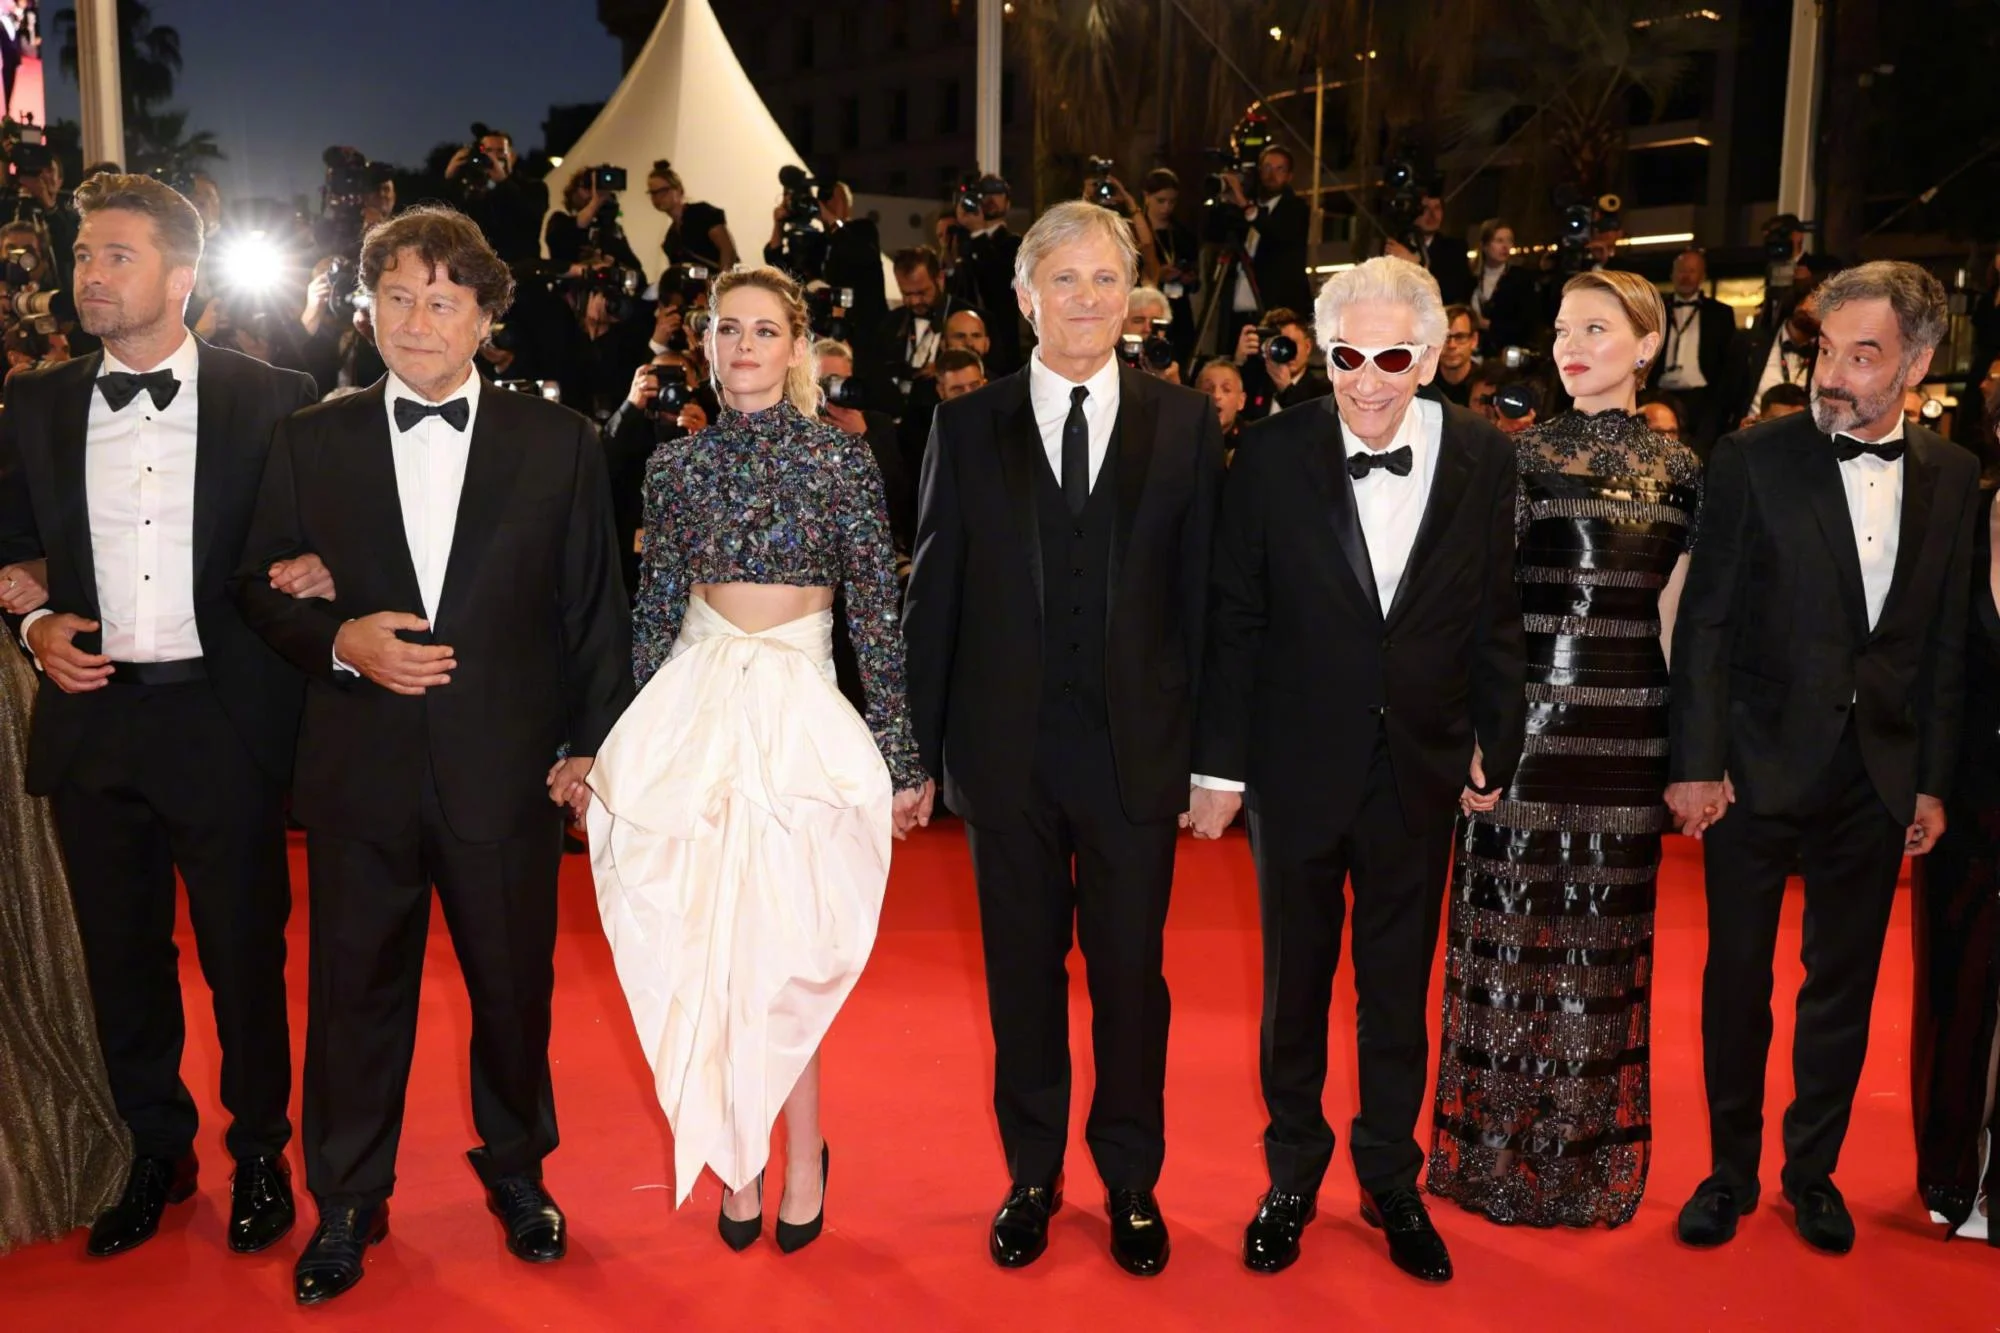 Léa Seydoux, David Cronenberg, Viggo Mortensen, Kristen Stewart at the Red Carpet Premiere of "Crimes of the Future‎"